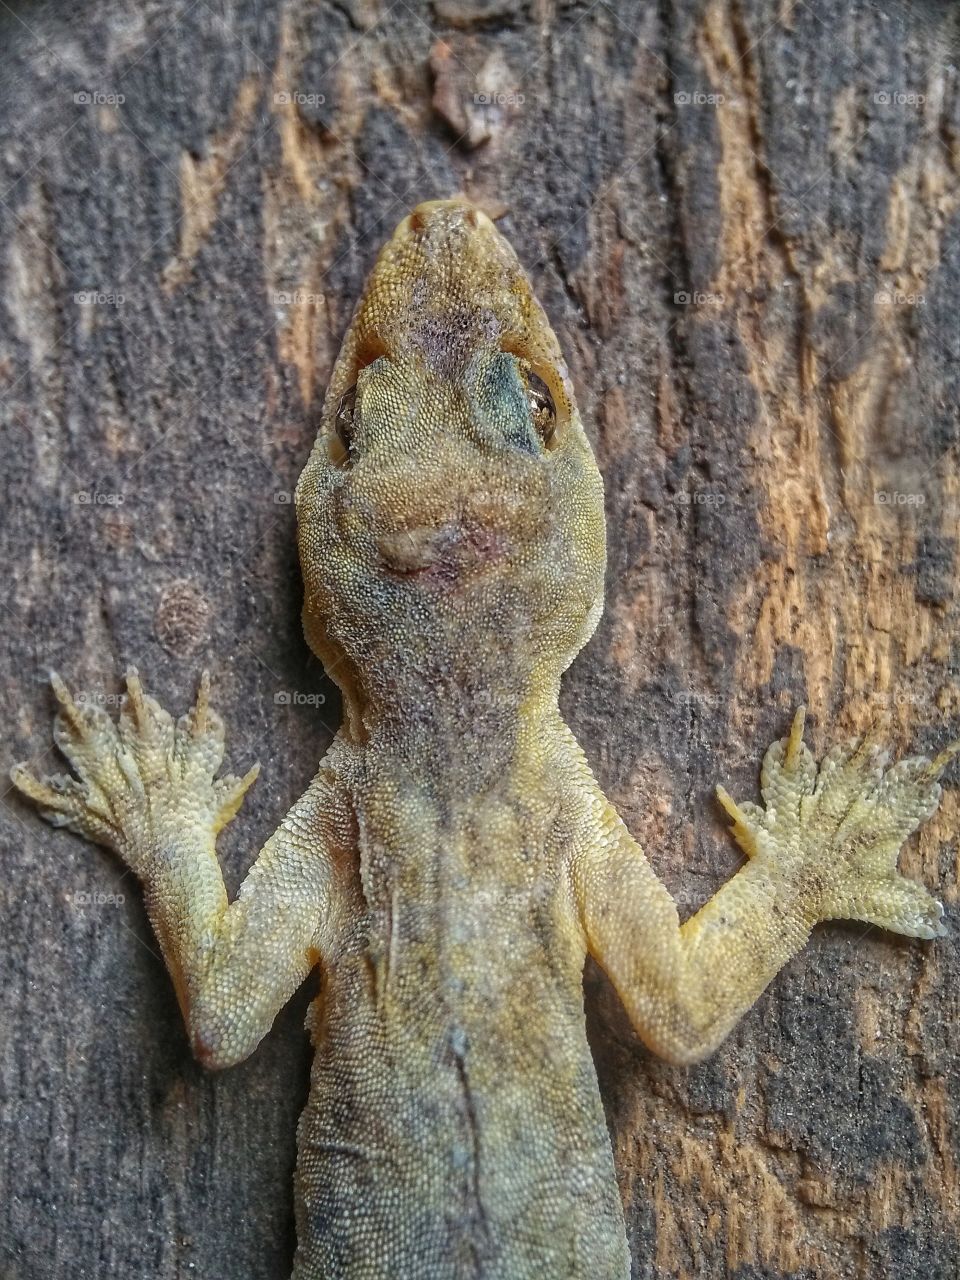 dead lizard on the wood